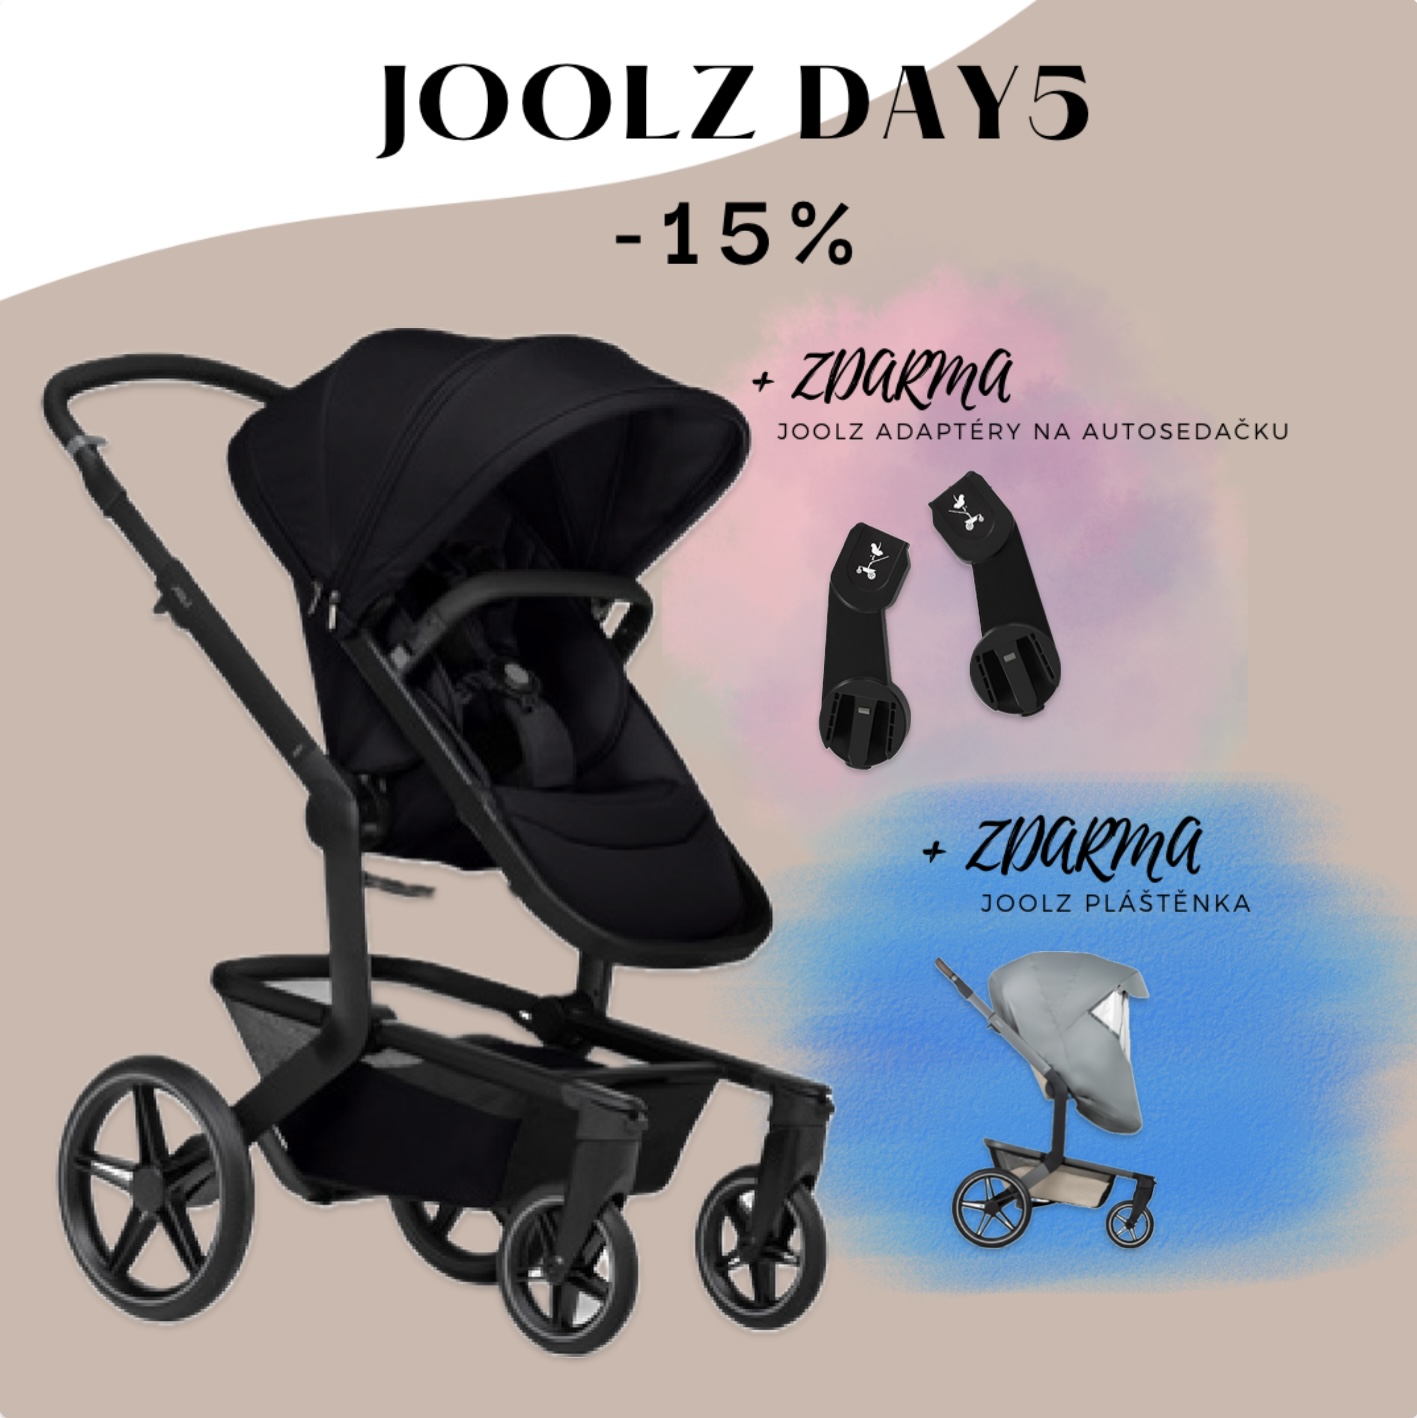 Joolz Day5 - Space black, kompletní set + pláštěnka a adaptéry na autosedačku jako DÁREK